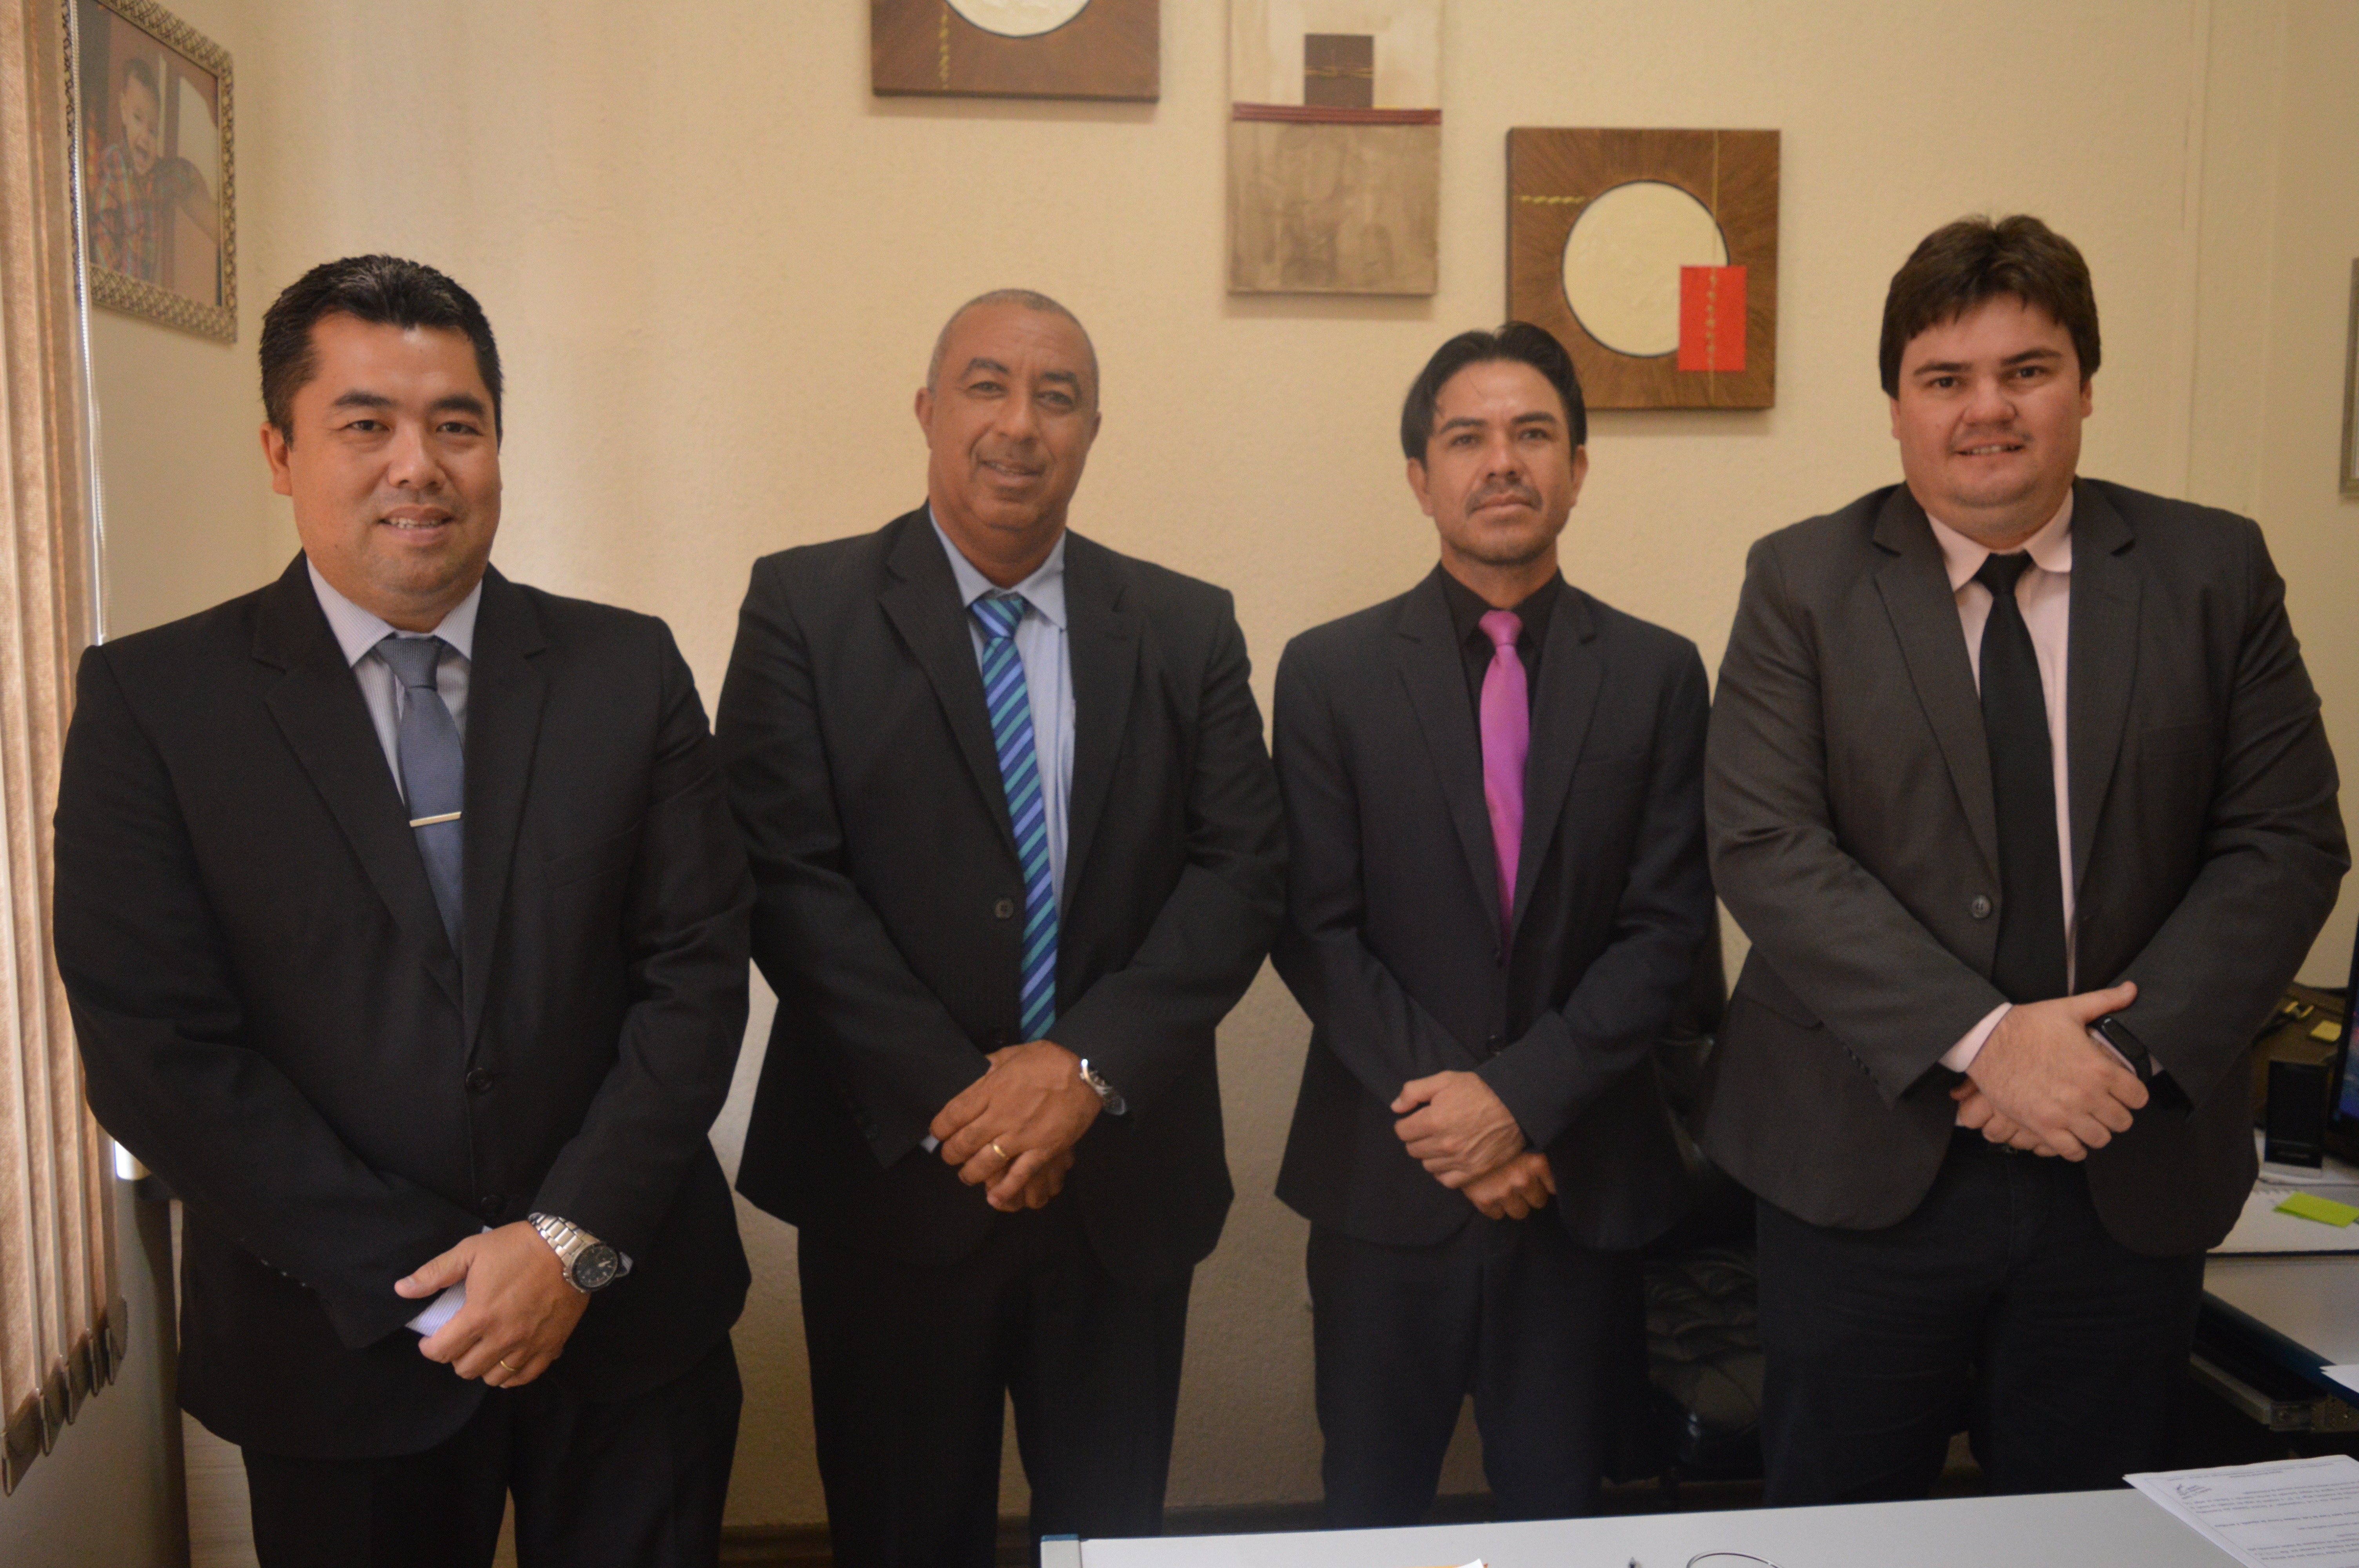 Vereadores Humberto, Carlinhos, Ismael e Maikell com compõem o G4 / Foto: Moreira Produções